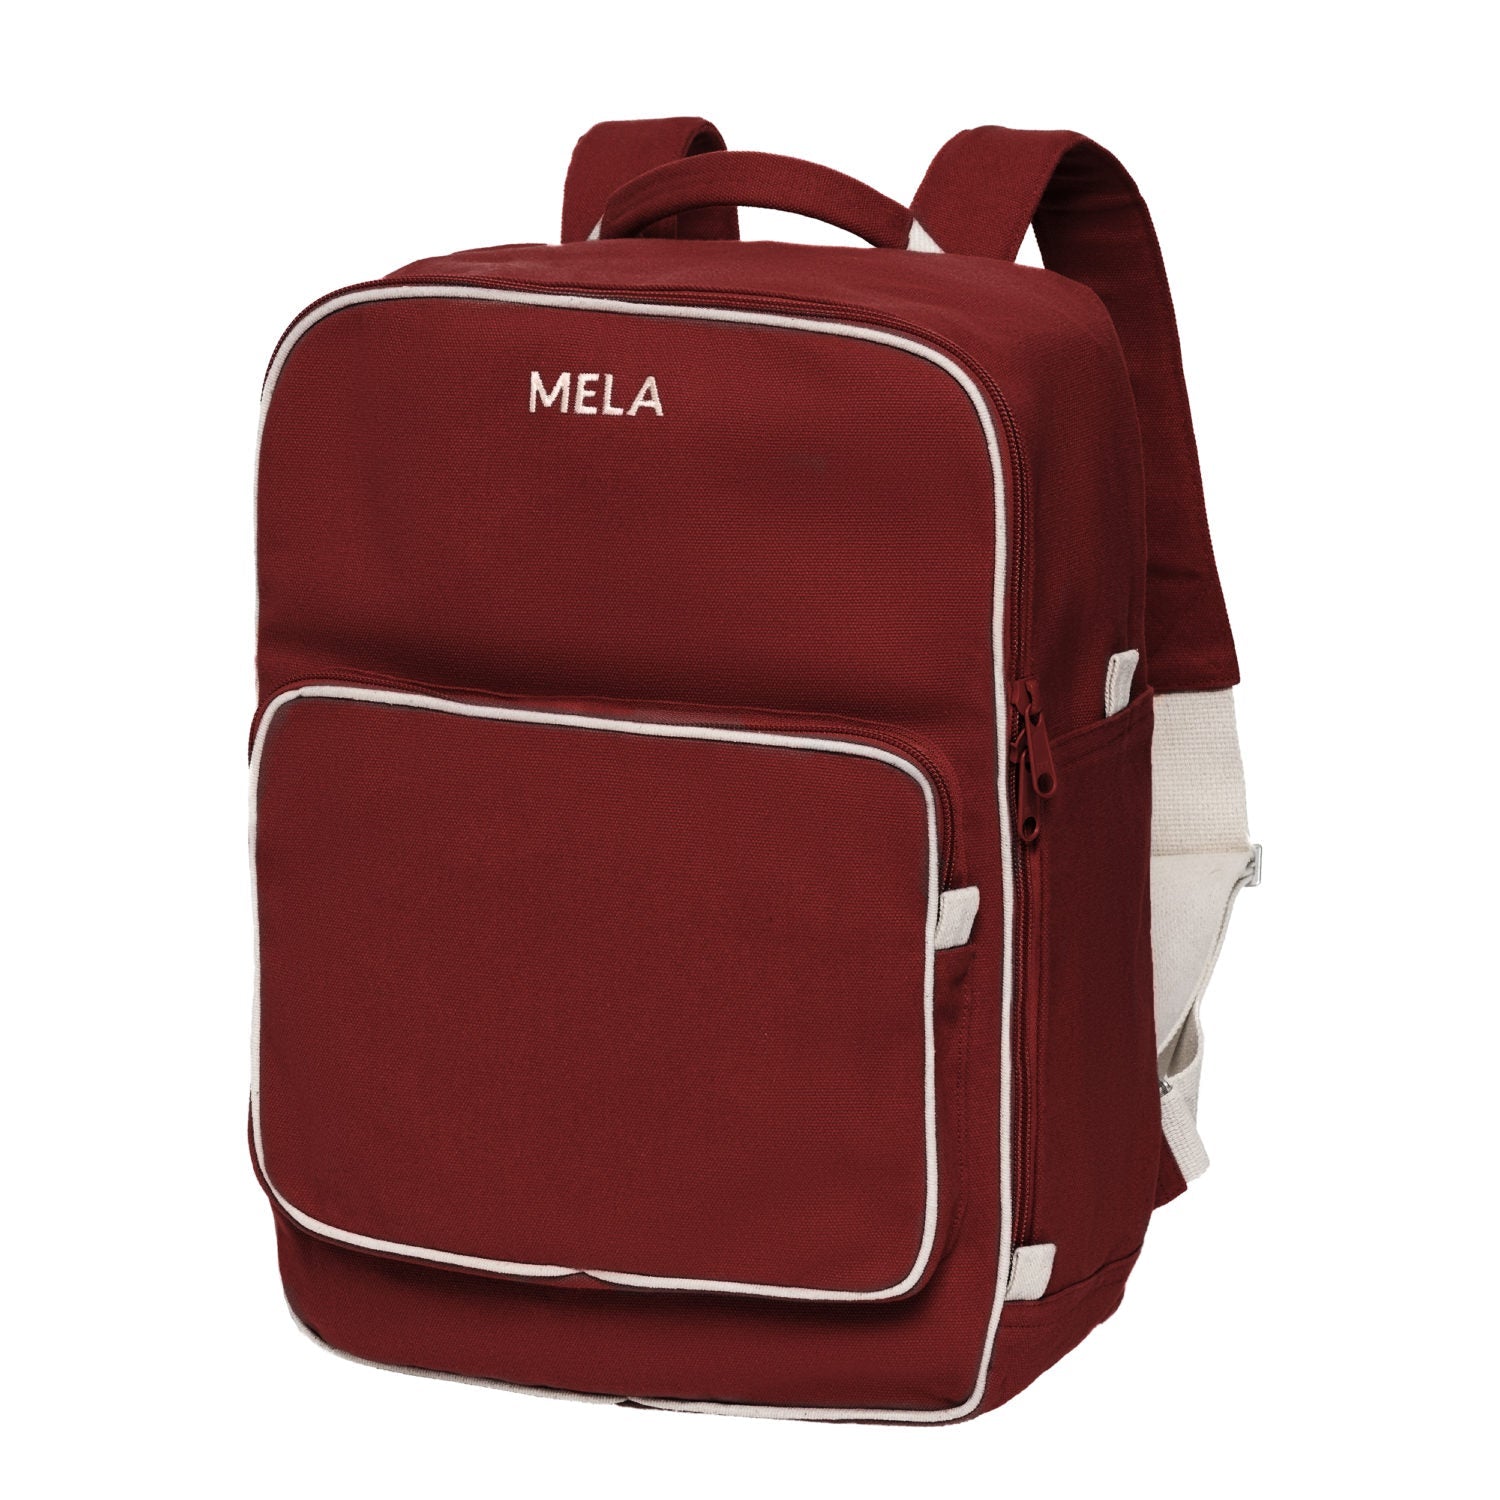 Melawear - MELA II hátizsák - Vörös